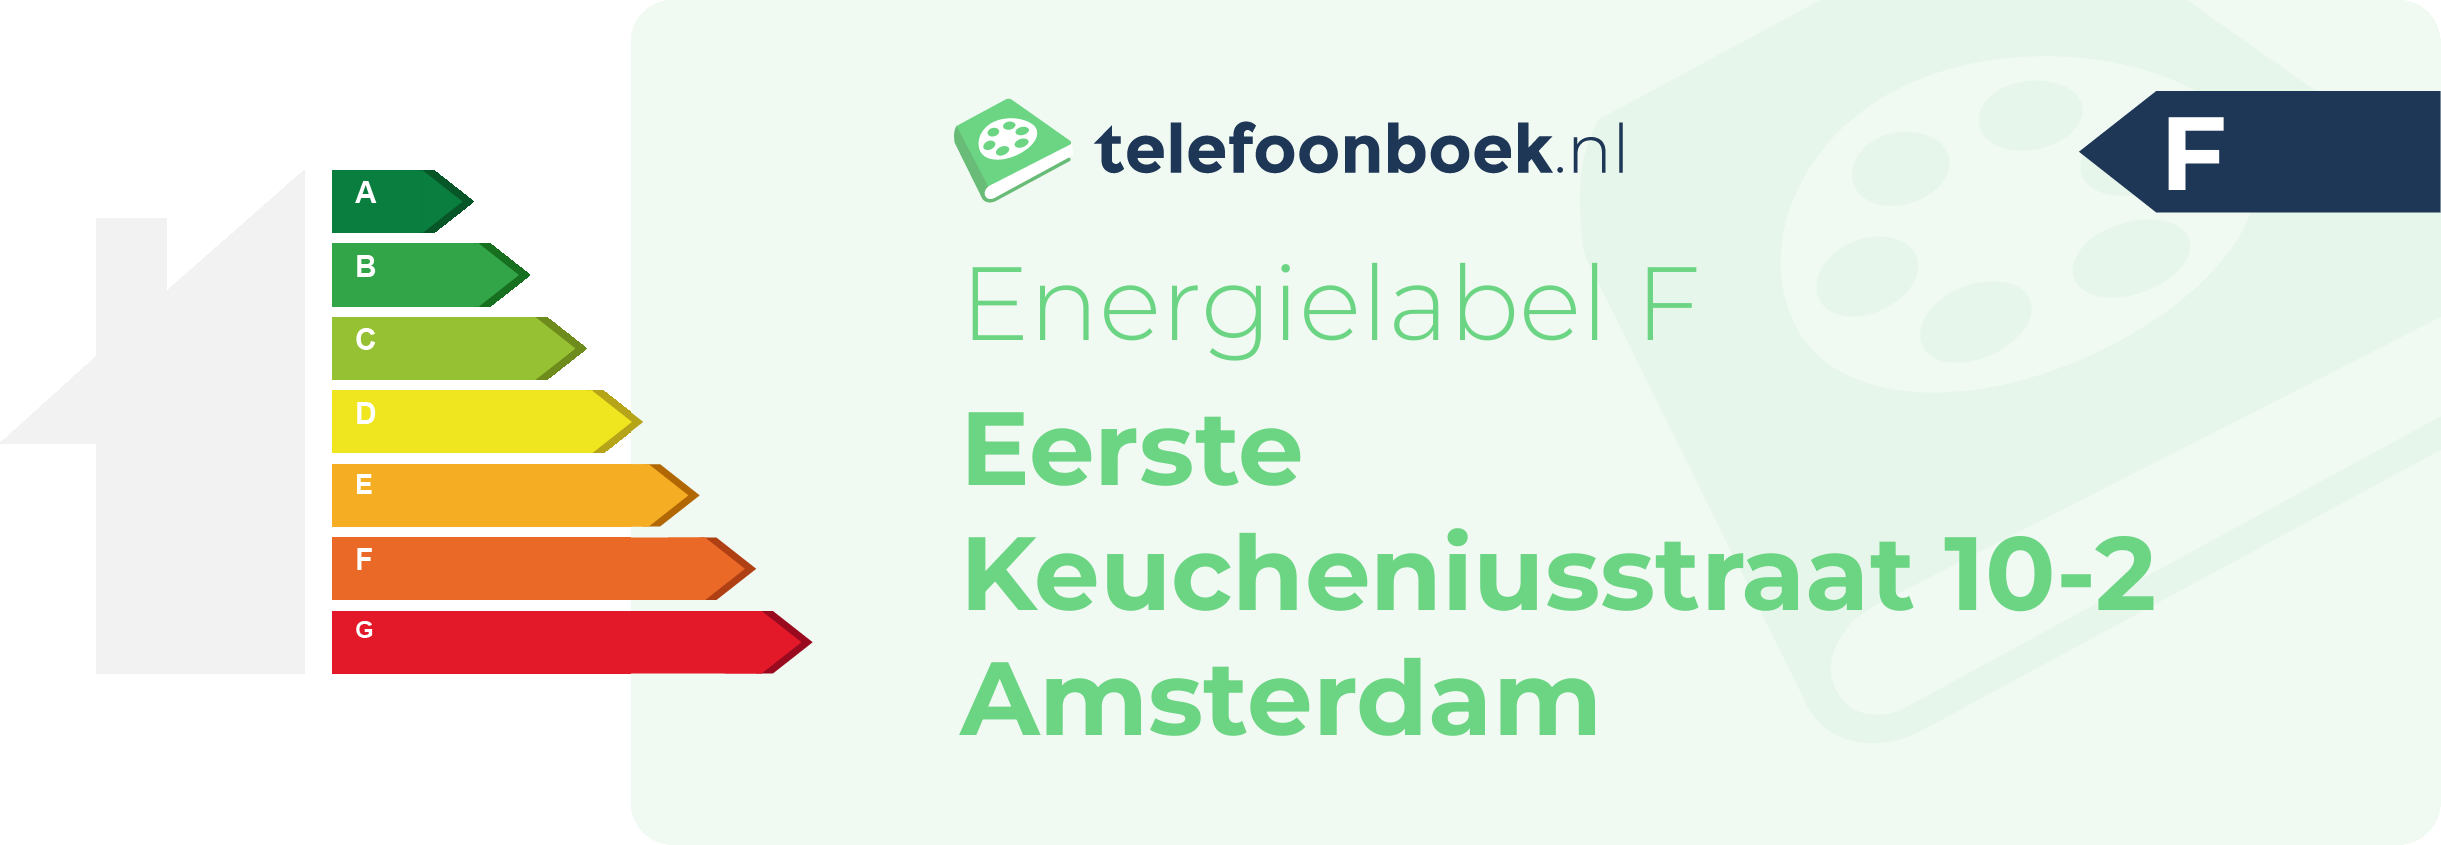 Energielabel Eerste Keucheniusstraat 10-2 Amsterdam